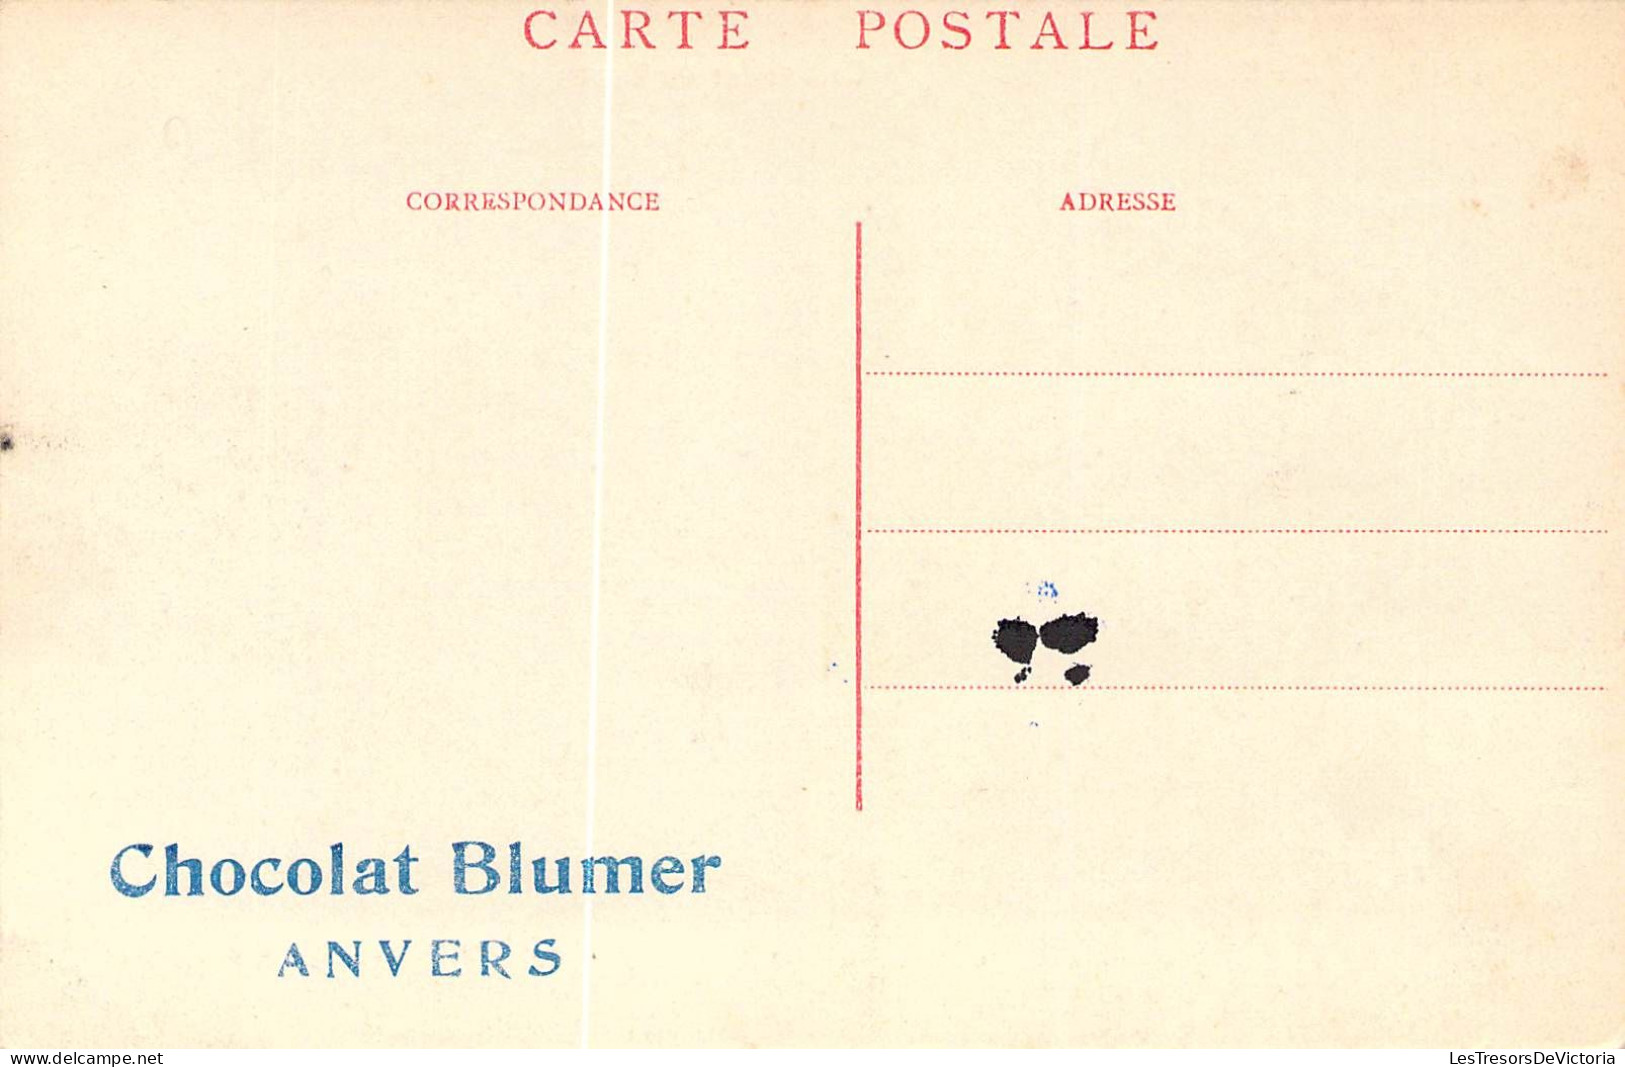 BELGIQUE - GILEPPE - Le Tablier Du Barrage - Publicité Chocolat Blumer Anvers - Carte Postale Ancienne - Gileppe (Stuwdam)